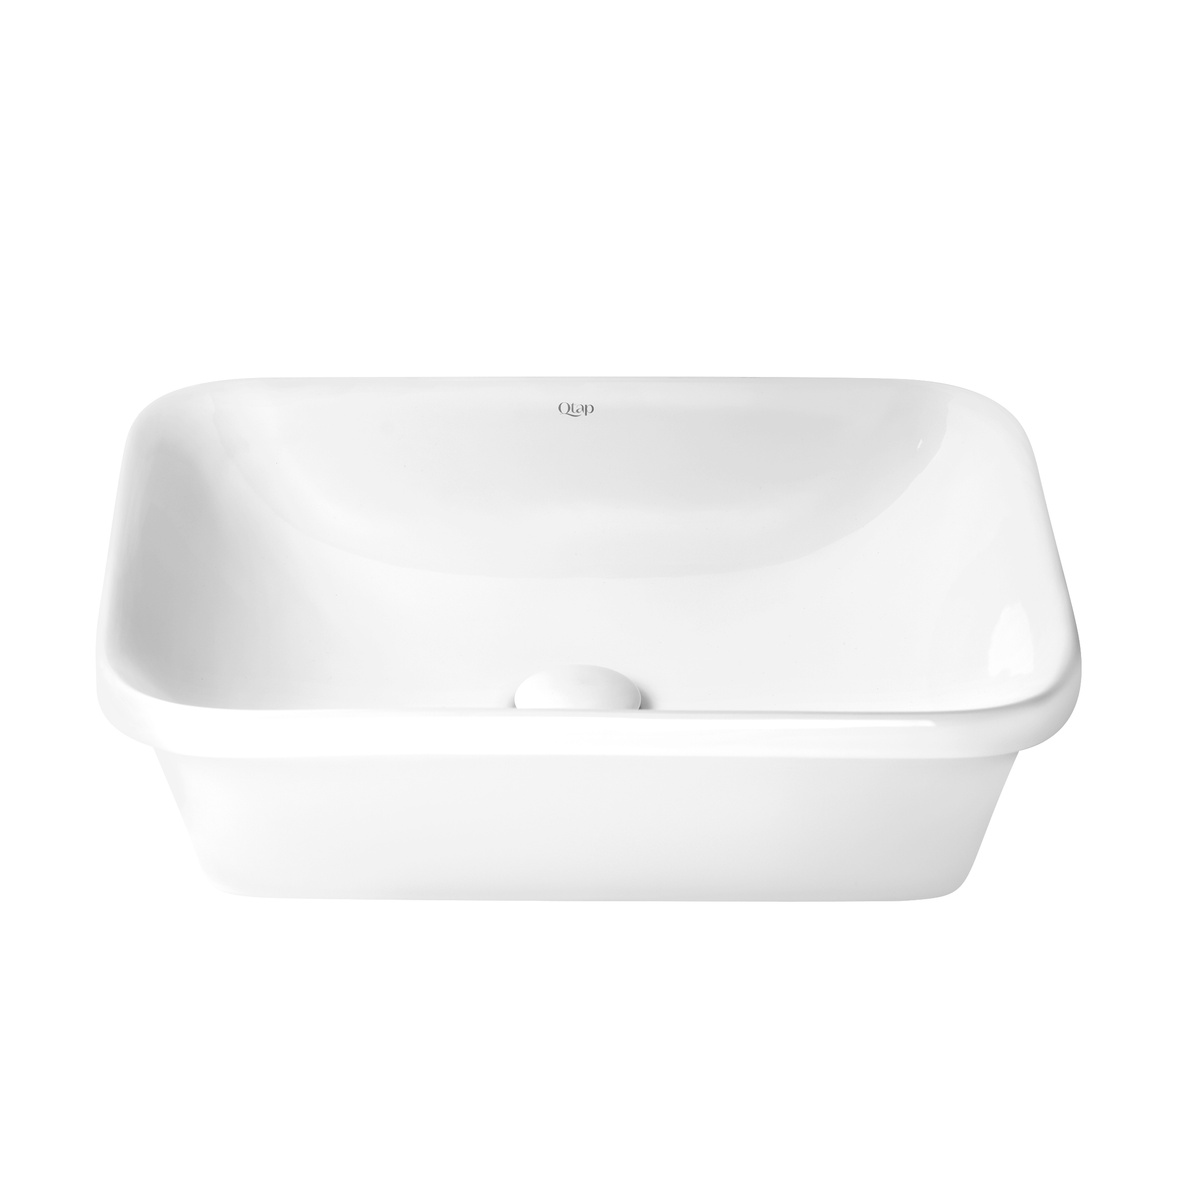 Умывальник врезной для ванной на столешницу 505мм x 380мм Q-TAP Scorpio белый прямоугольная QT1411K490W